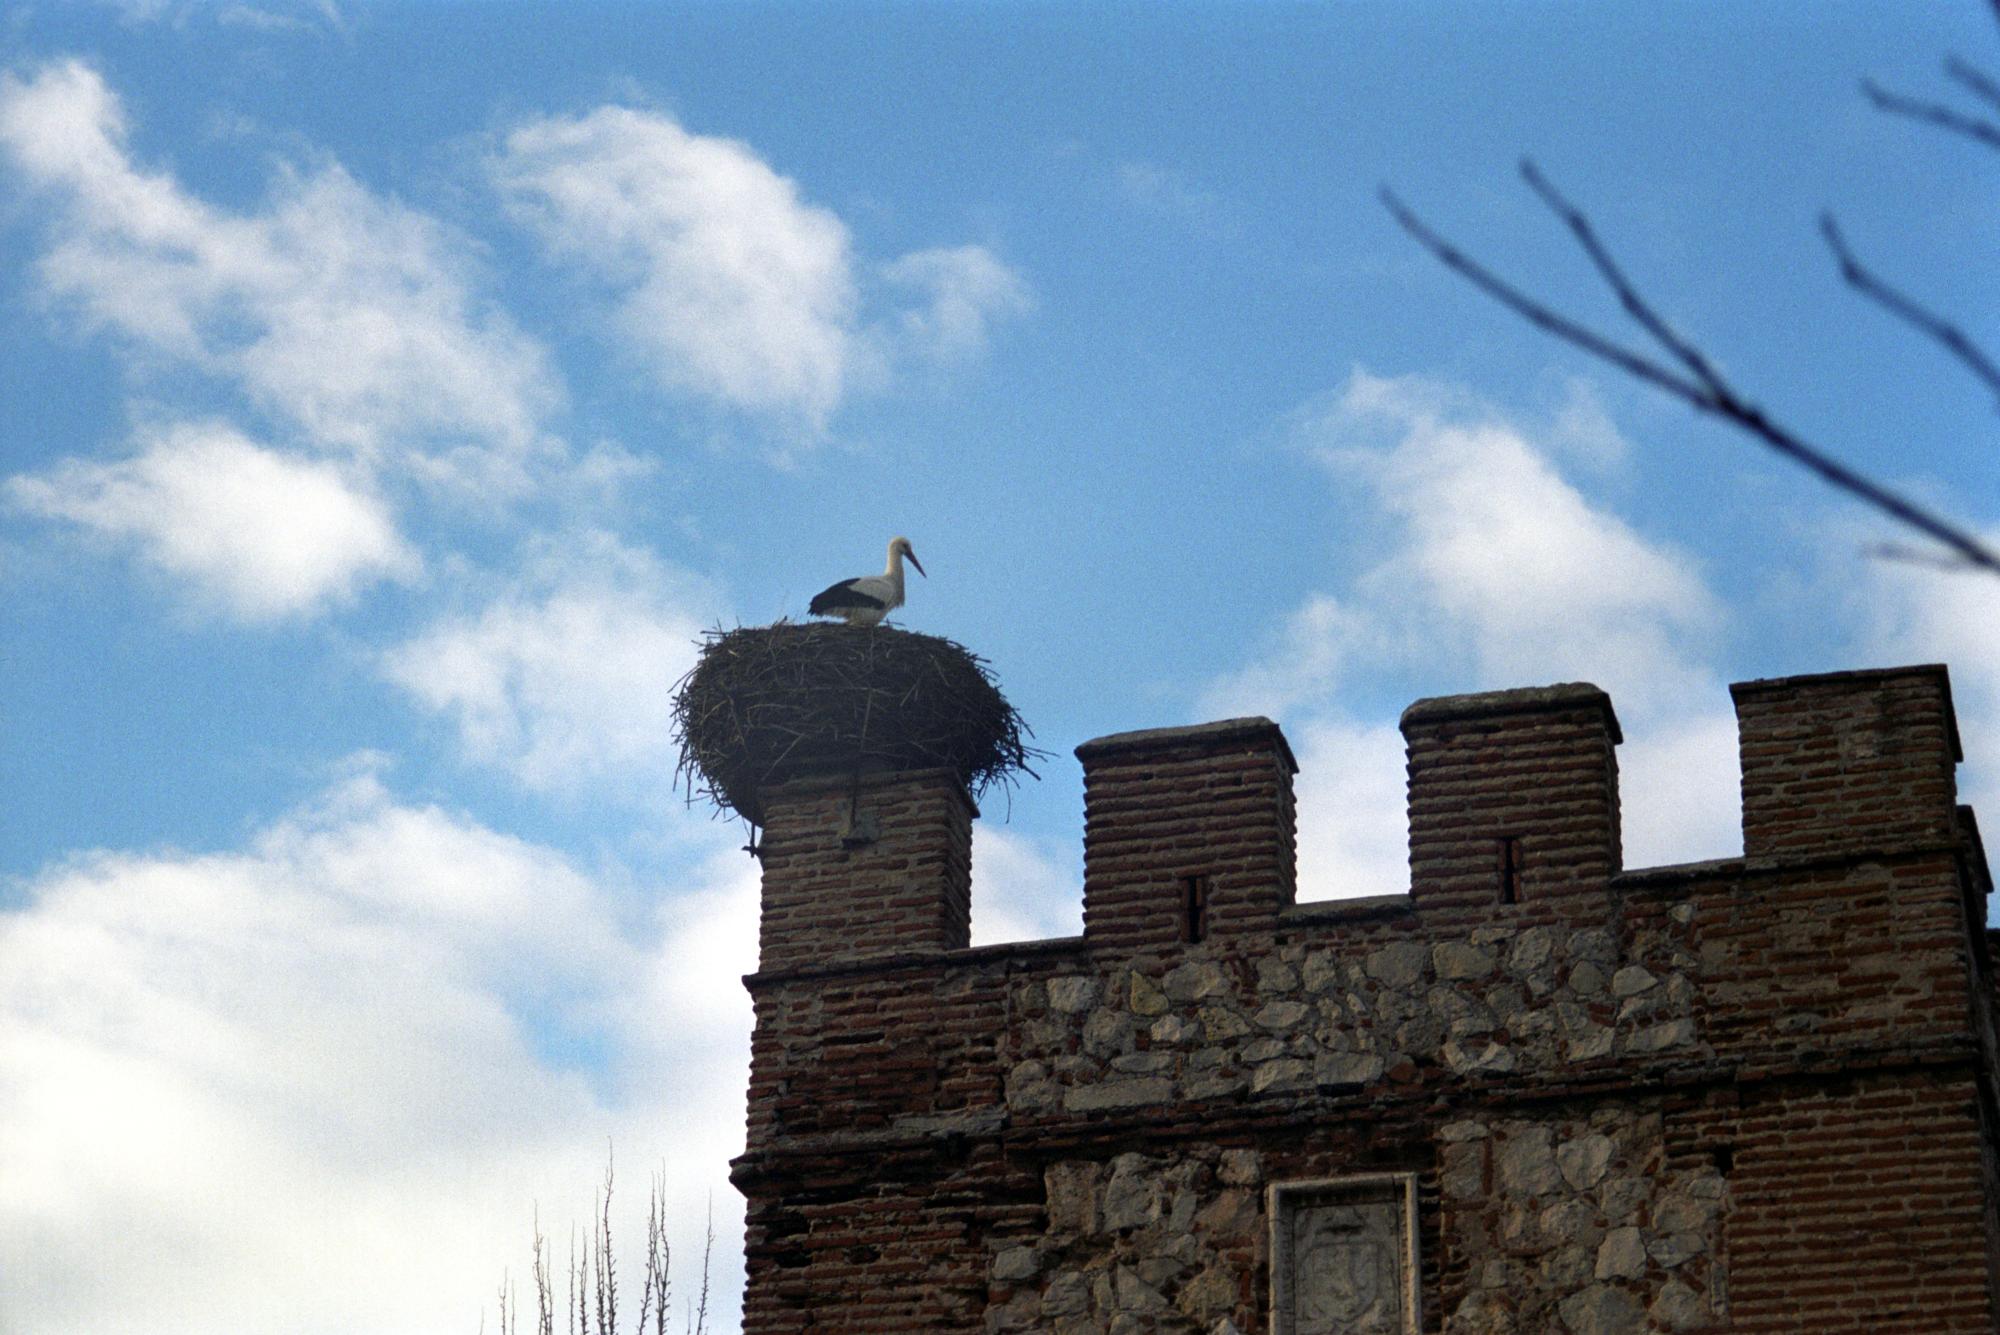 Spain - Stork